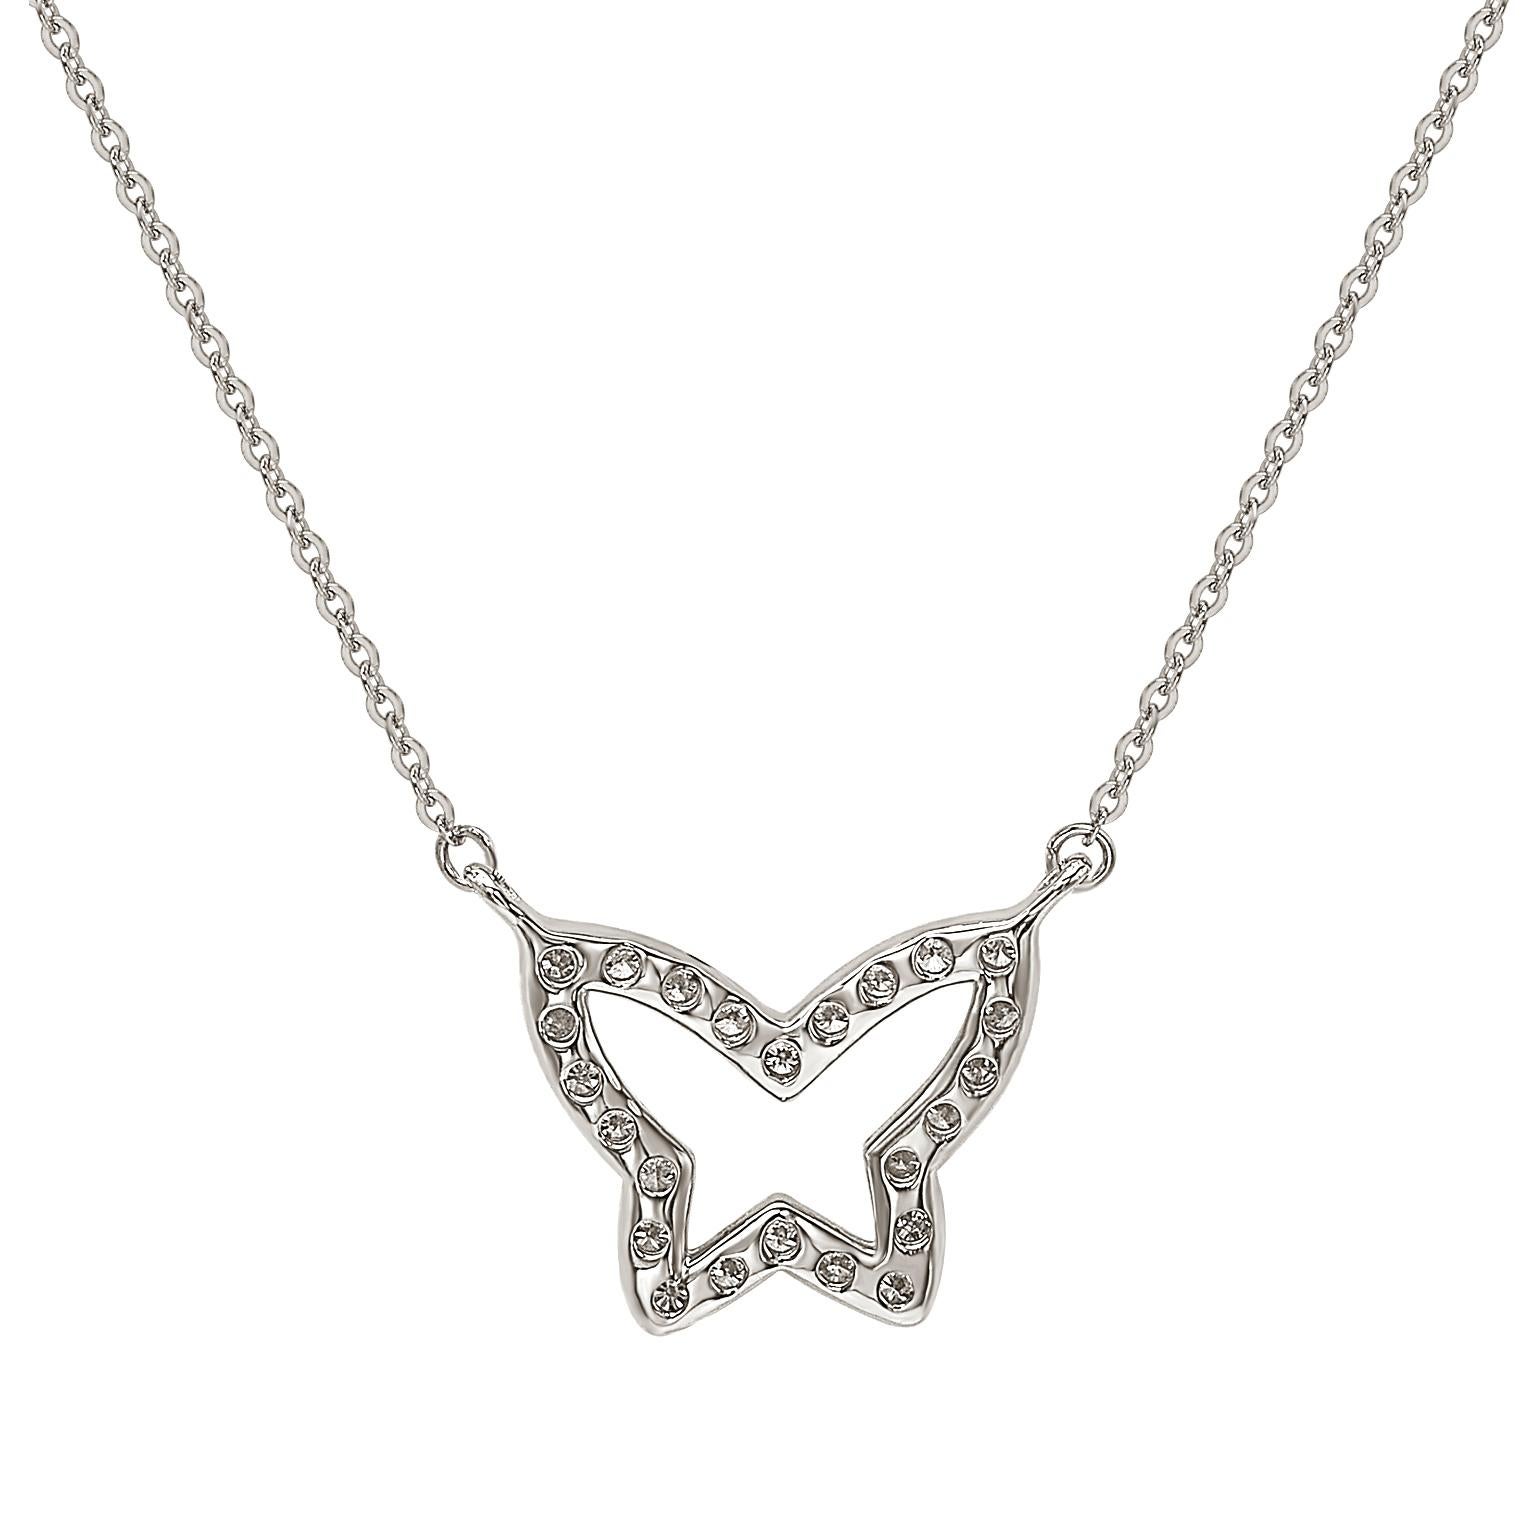 Cet époustouflant collier papillon de Suzy Levian est orné de diamants naturels, sertis à la main dans de l'or blanc 14 carats. C'est le cadeau idéal pour faire savoir à quelqu'un de spécial que vous pensez à lui. Chaque collier papillon présente